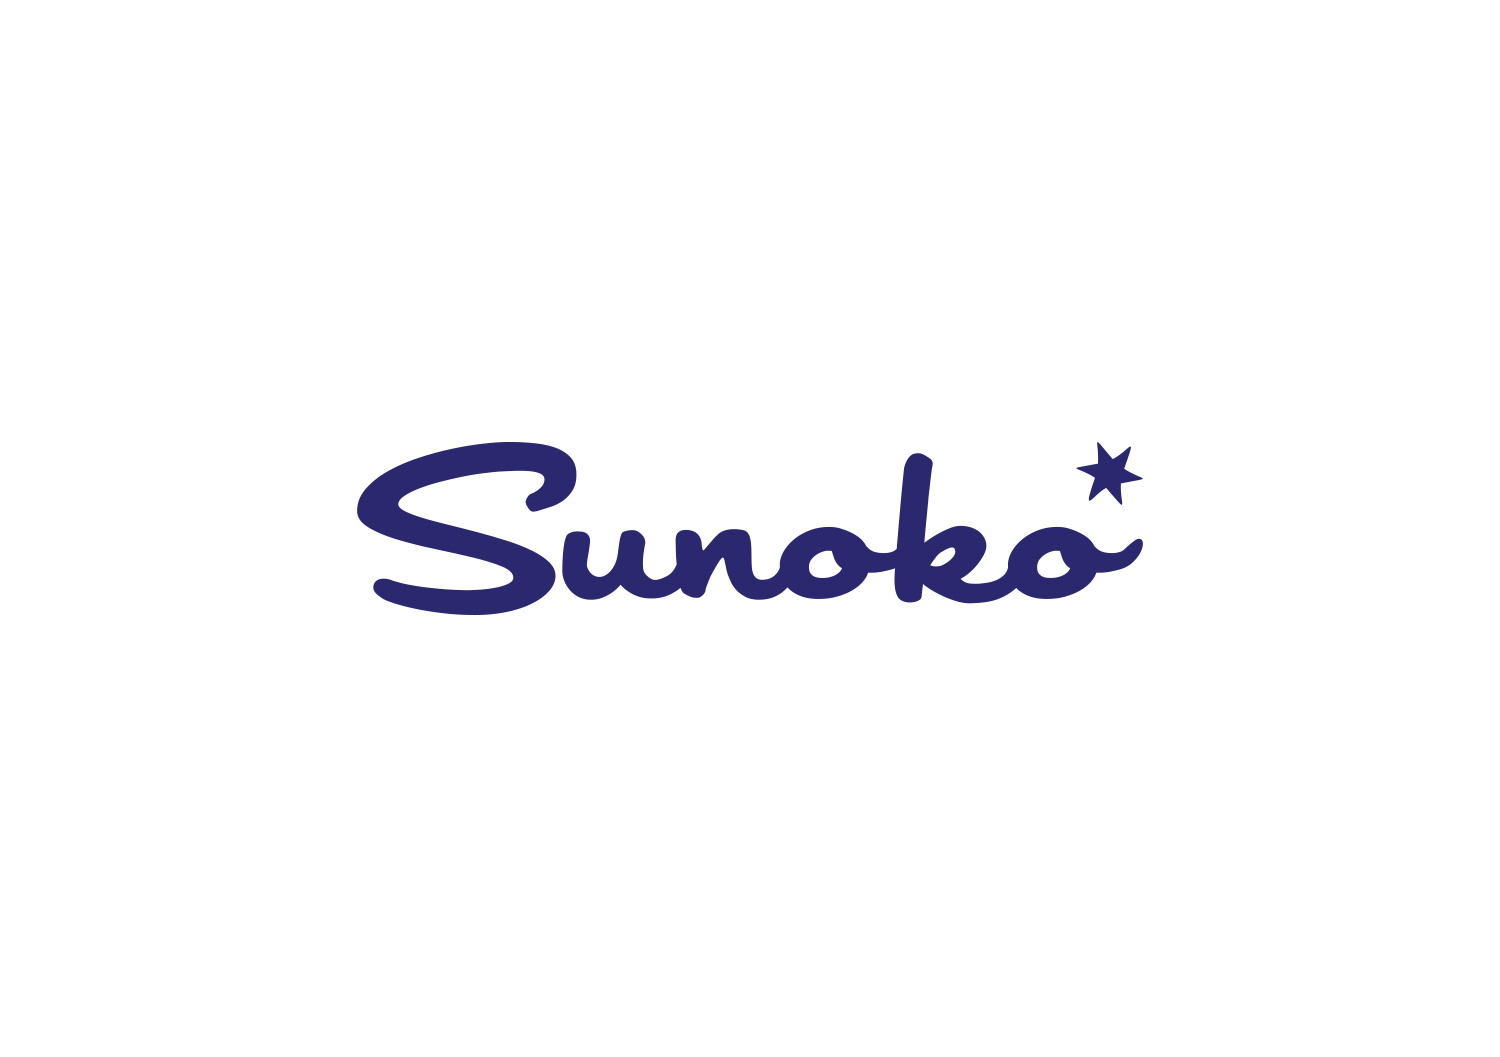 Sunoko